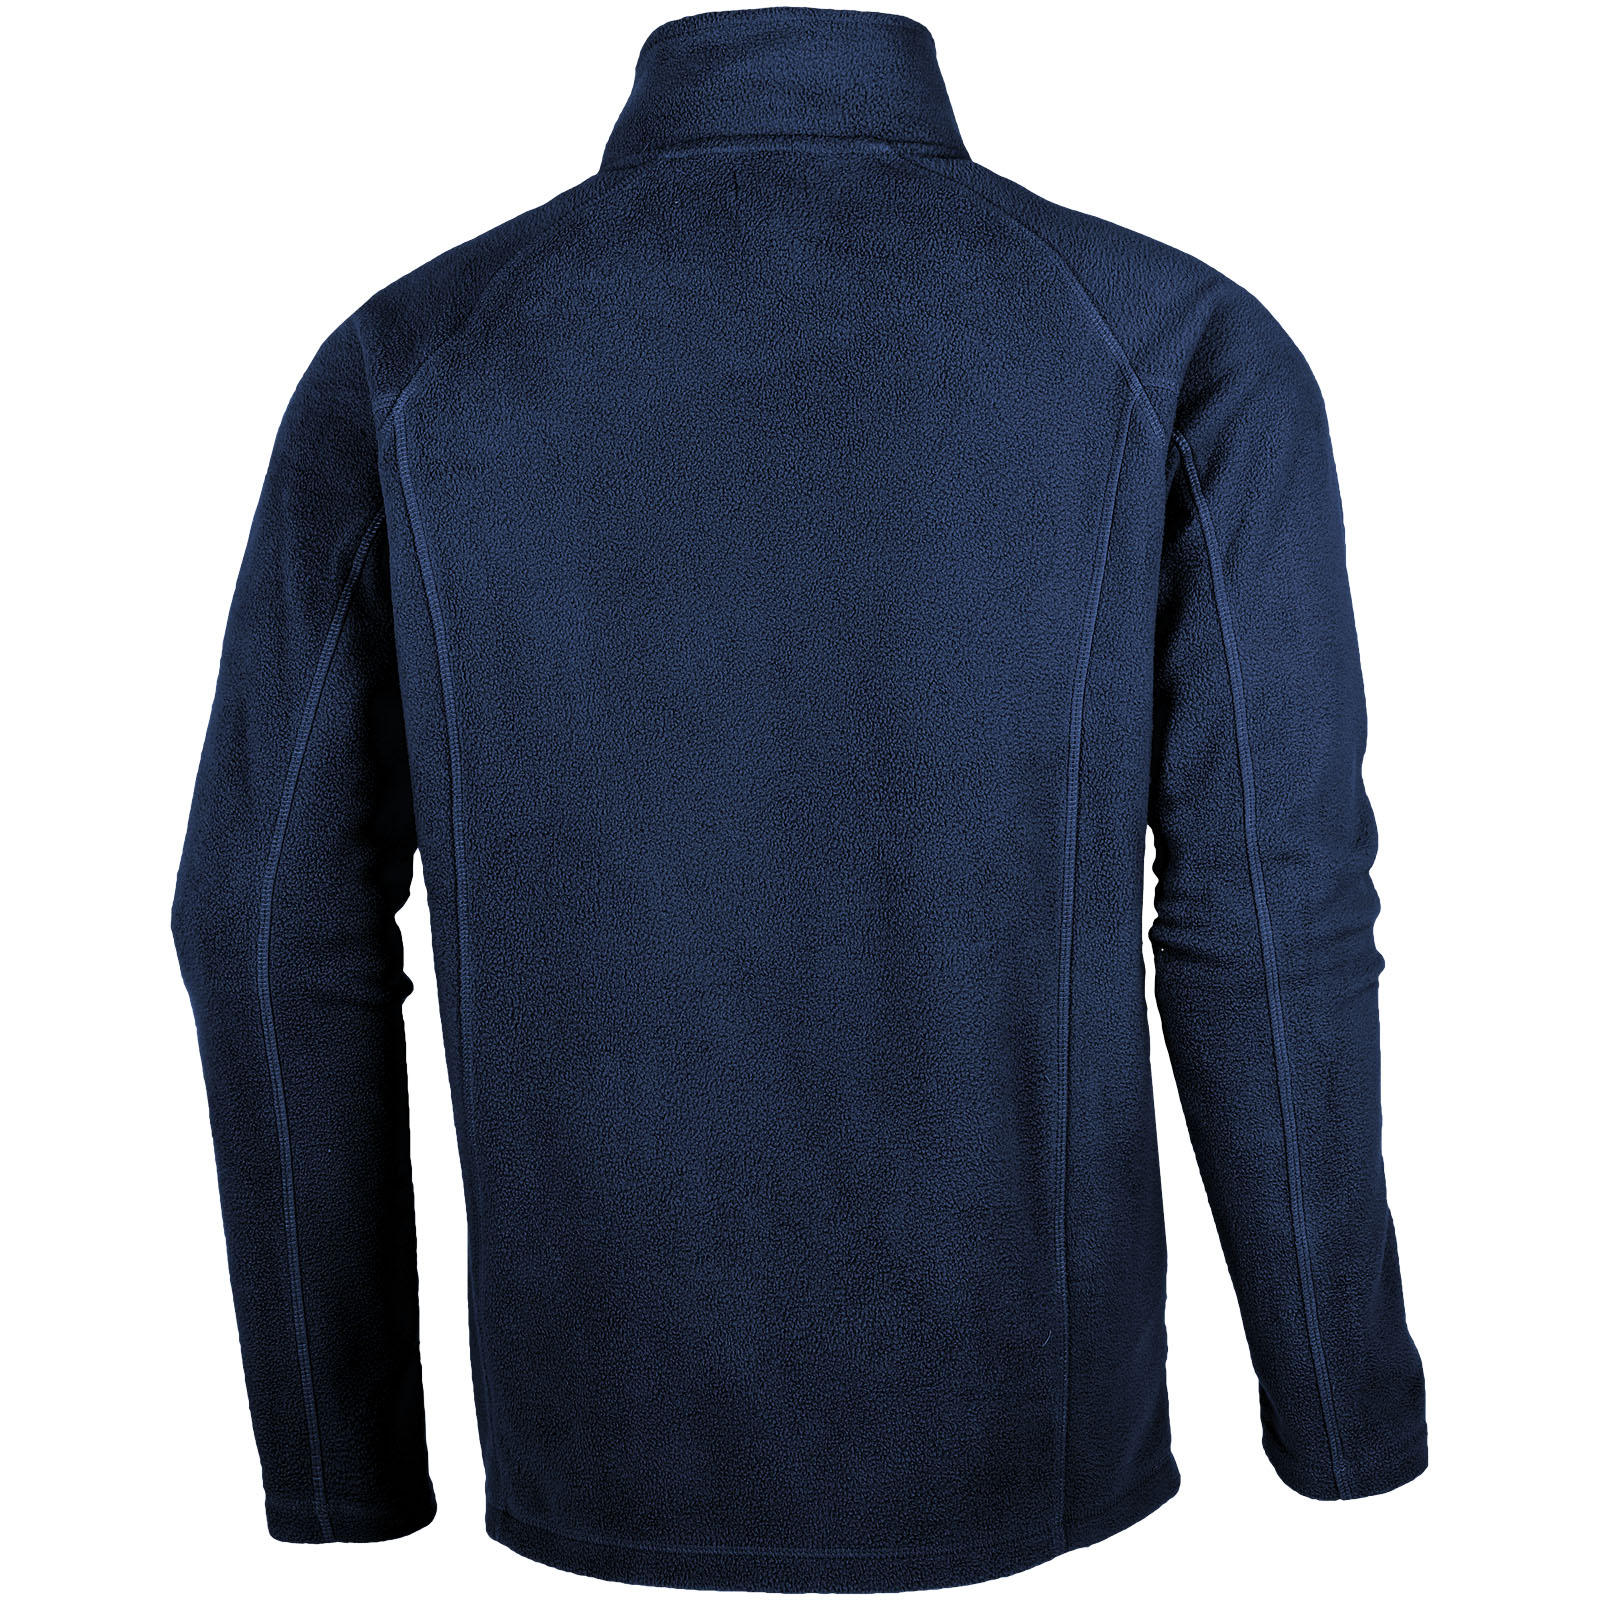 Advertising Fleece - Rixford men's full zip fleece jacket - 1